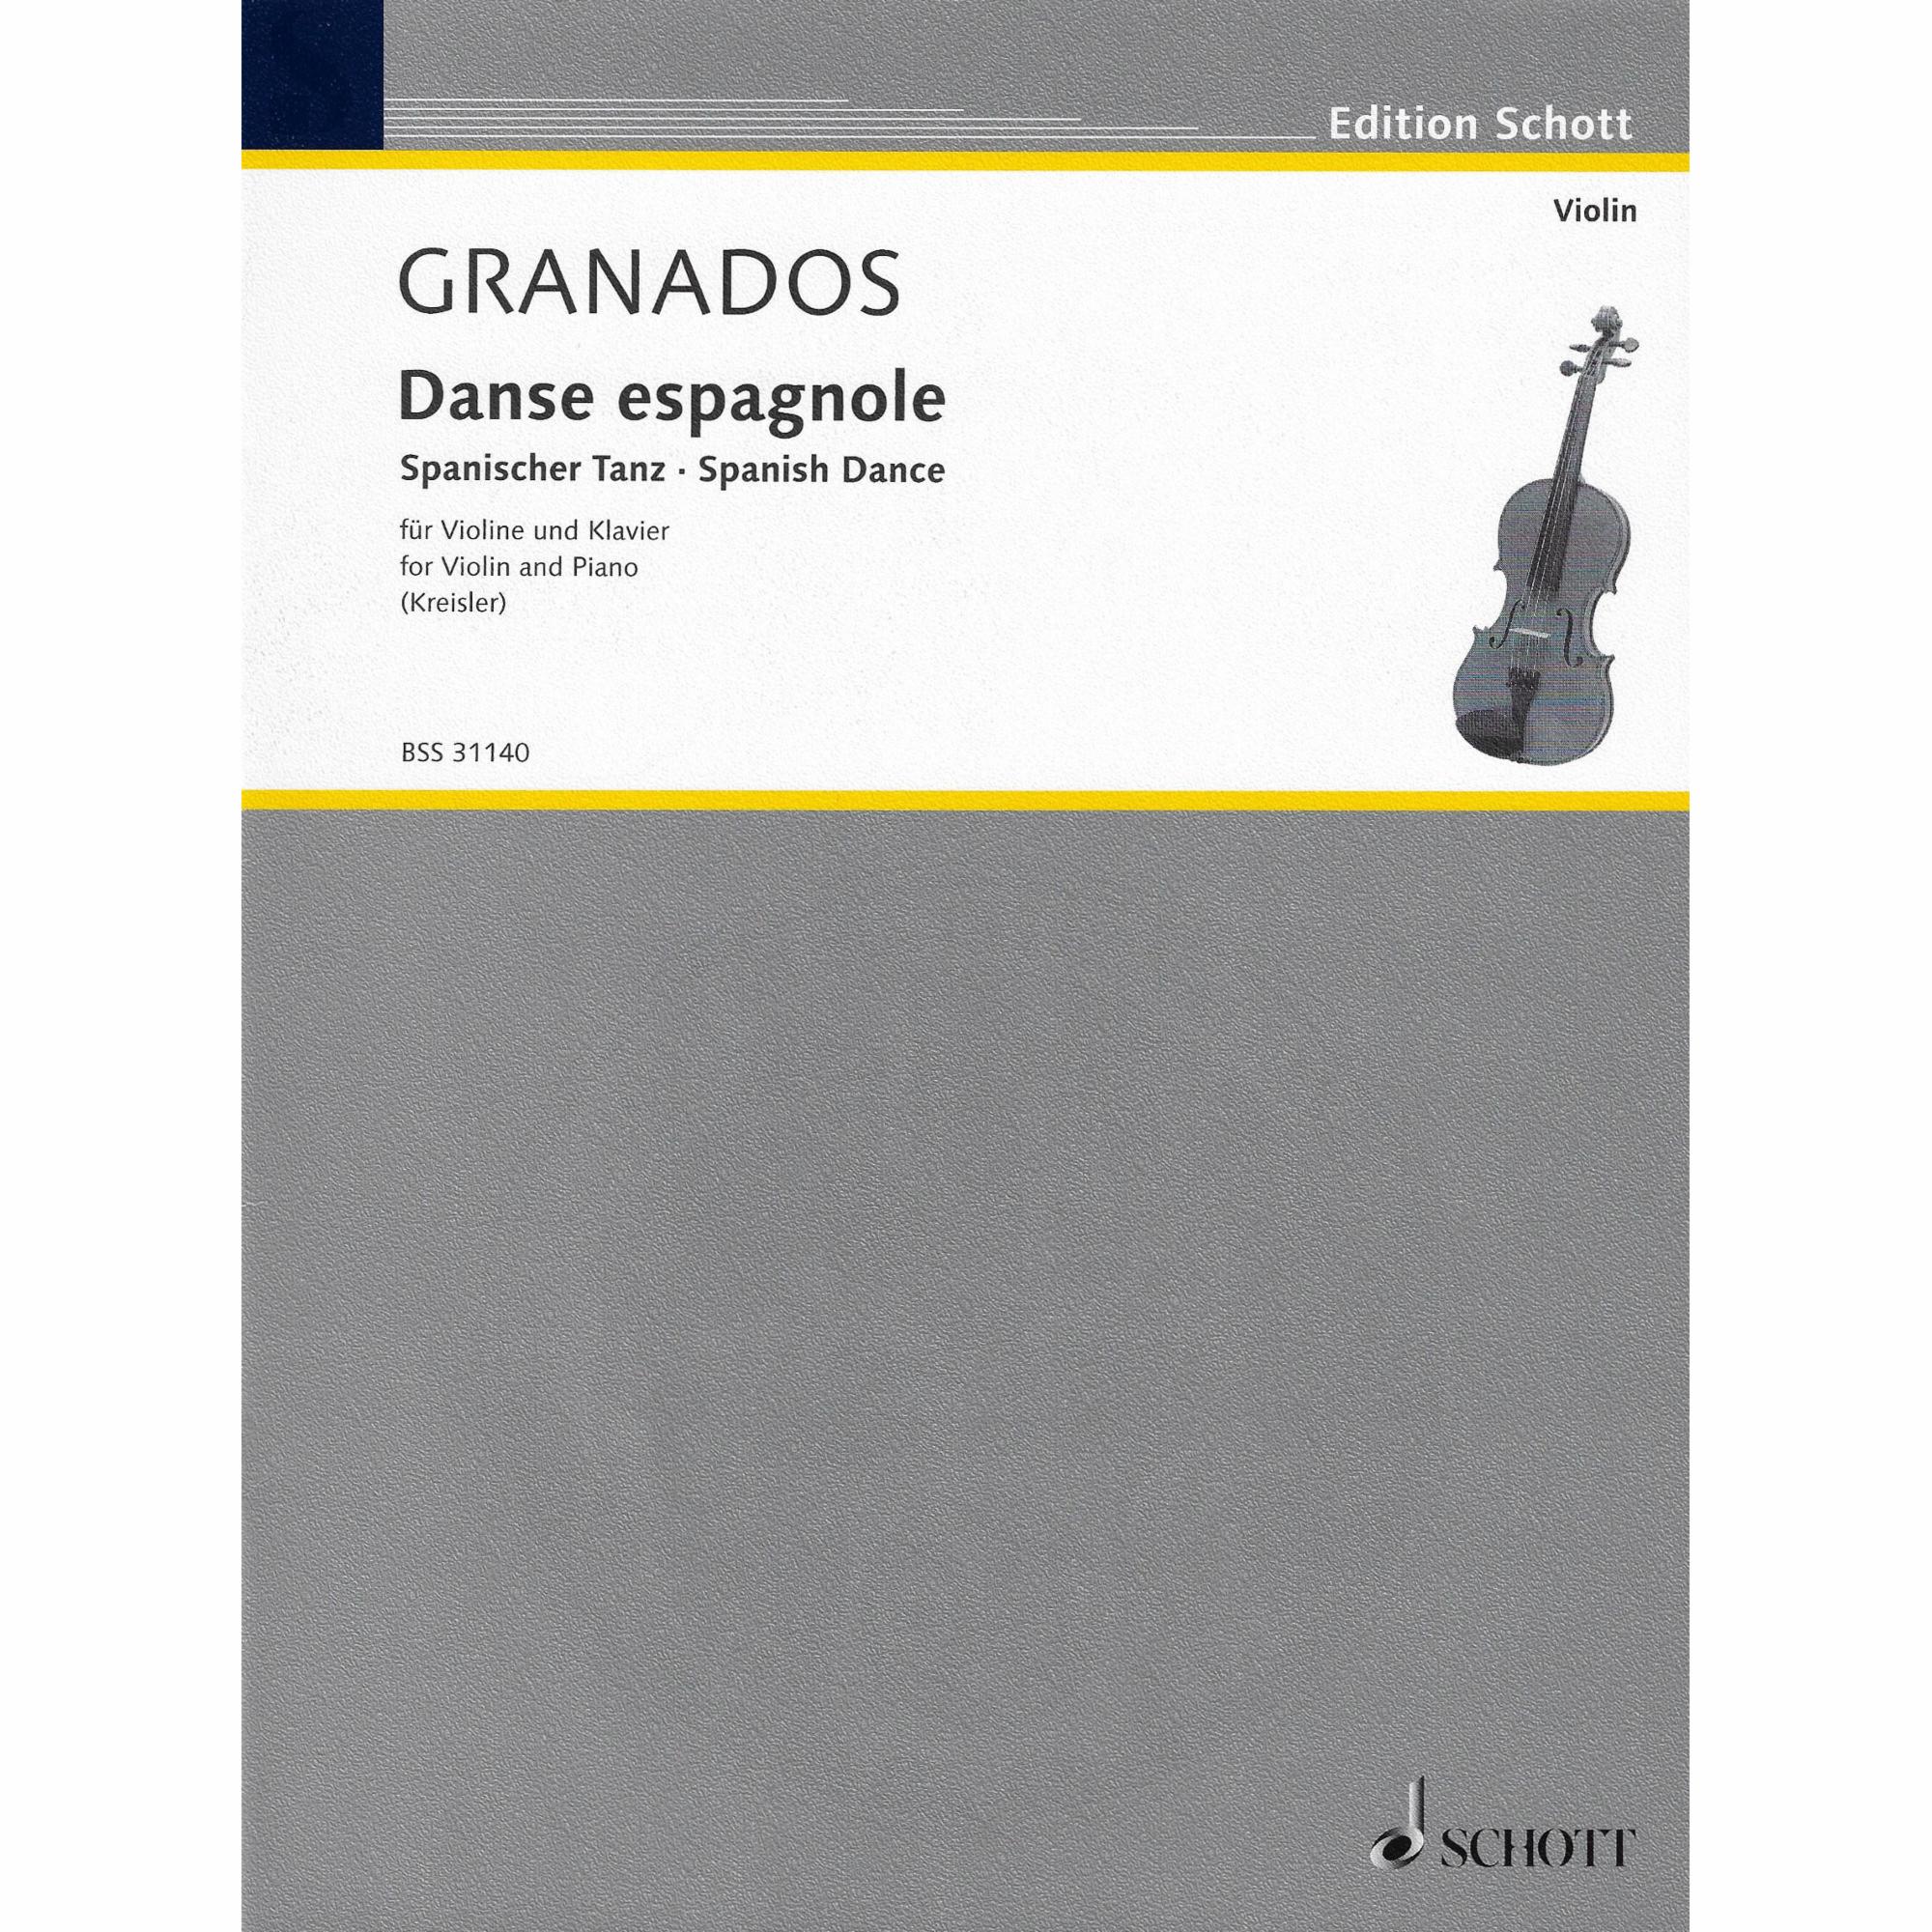 Granados -- Danse espagnole for Violin and Piano